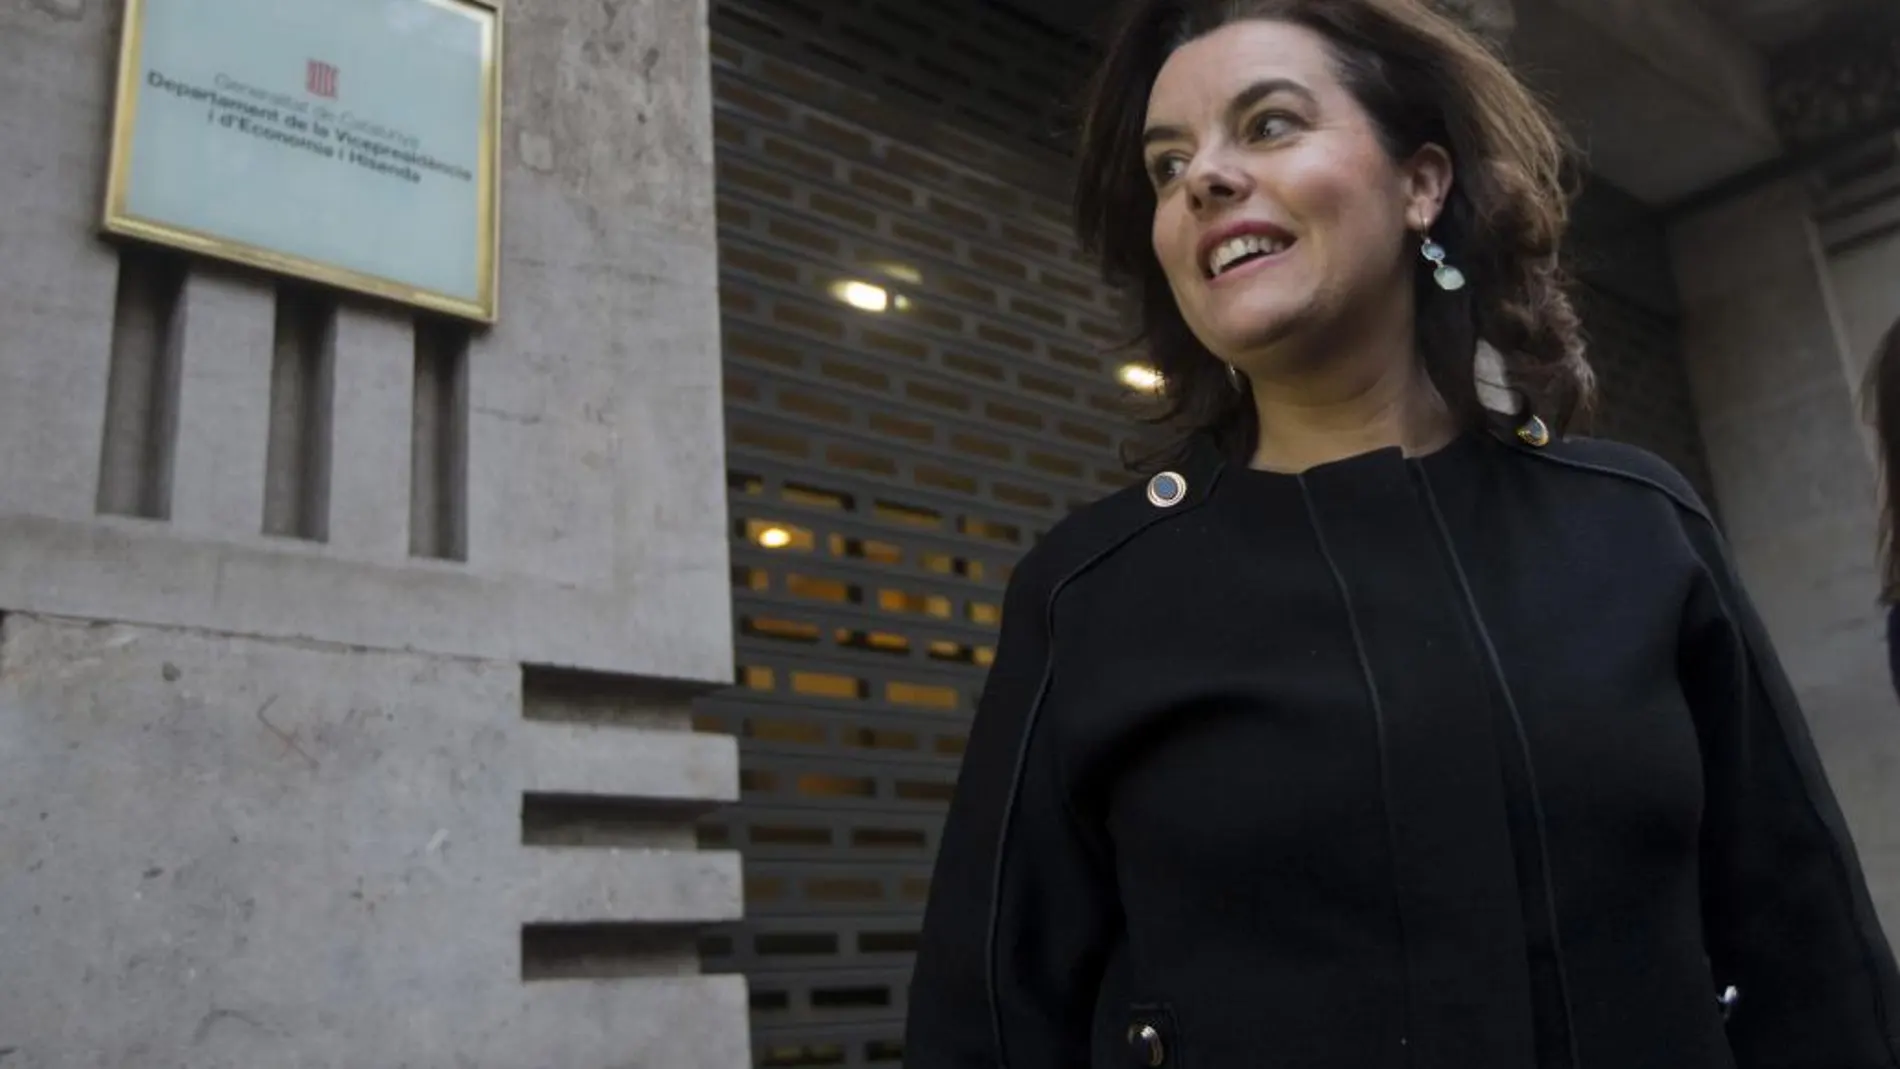 La vicepresidenta del Gobierno, Soraya Sáenz de Santamaría, ha llegado sobre las 17.10 horas de hoy a la sede de la consellería de Economía de la Generalitat